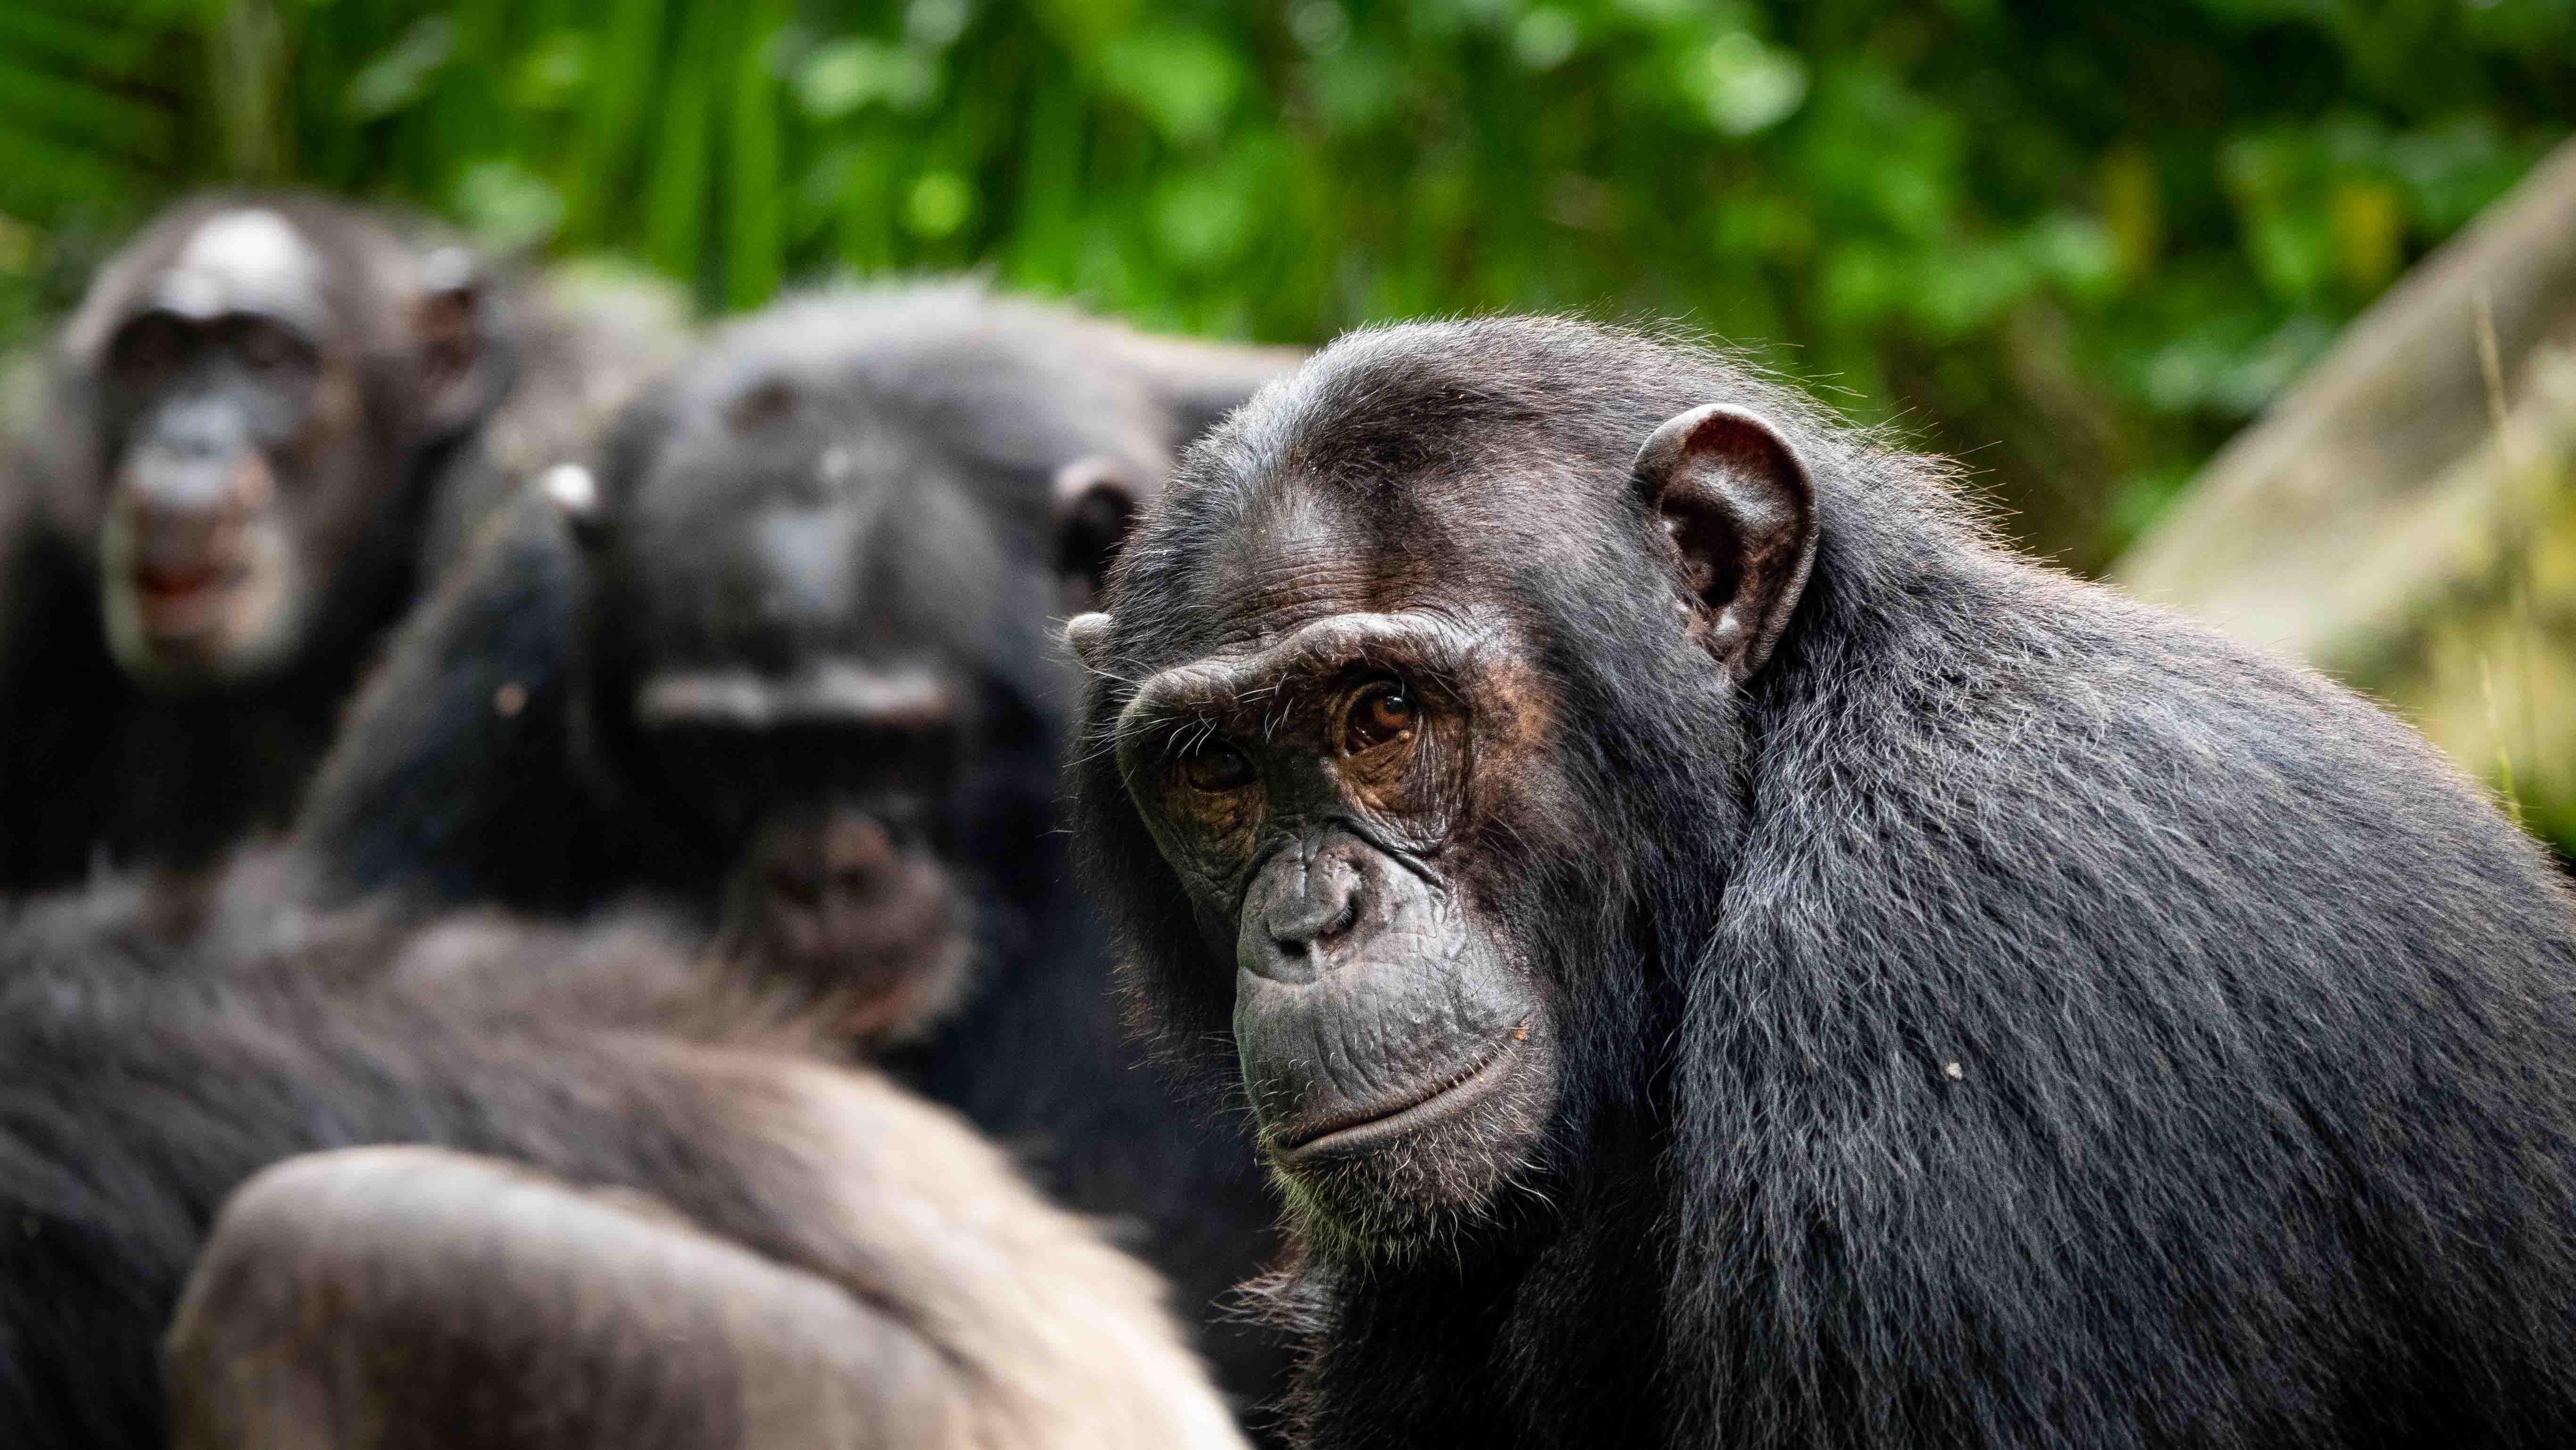  La intelingencia de los Chimpancés. Los chimpancés y recuerdan a sus amigos décadas después de estar separados.